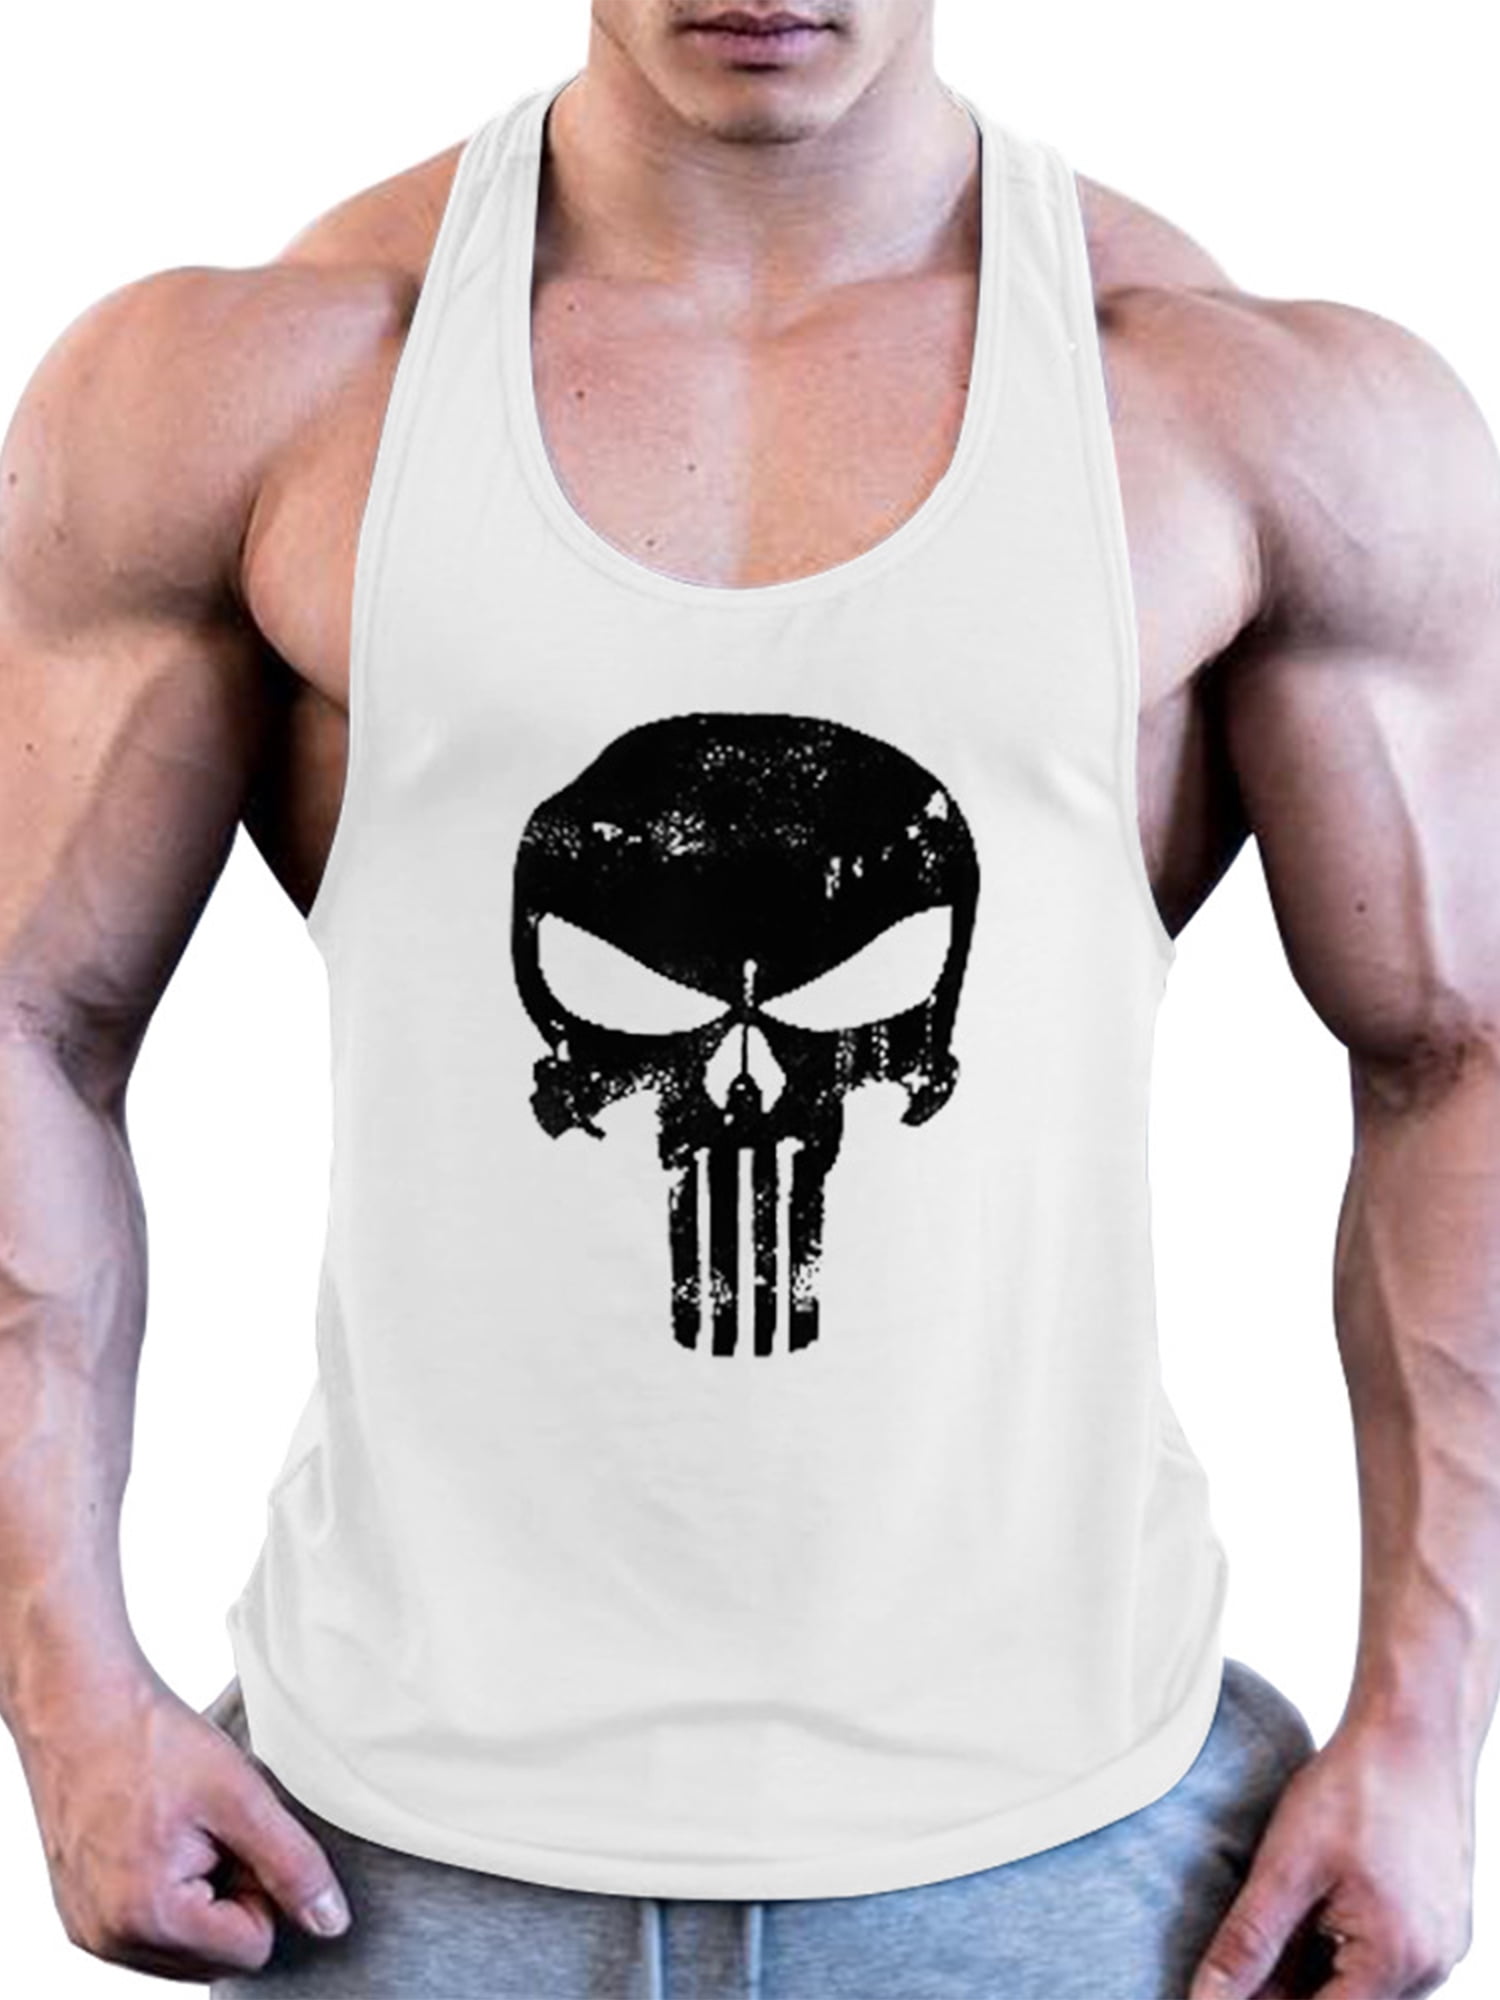 Mens Tank Tops Gym Vests Shirt Black Elephant Bodybuilding Workout Vest 